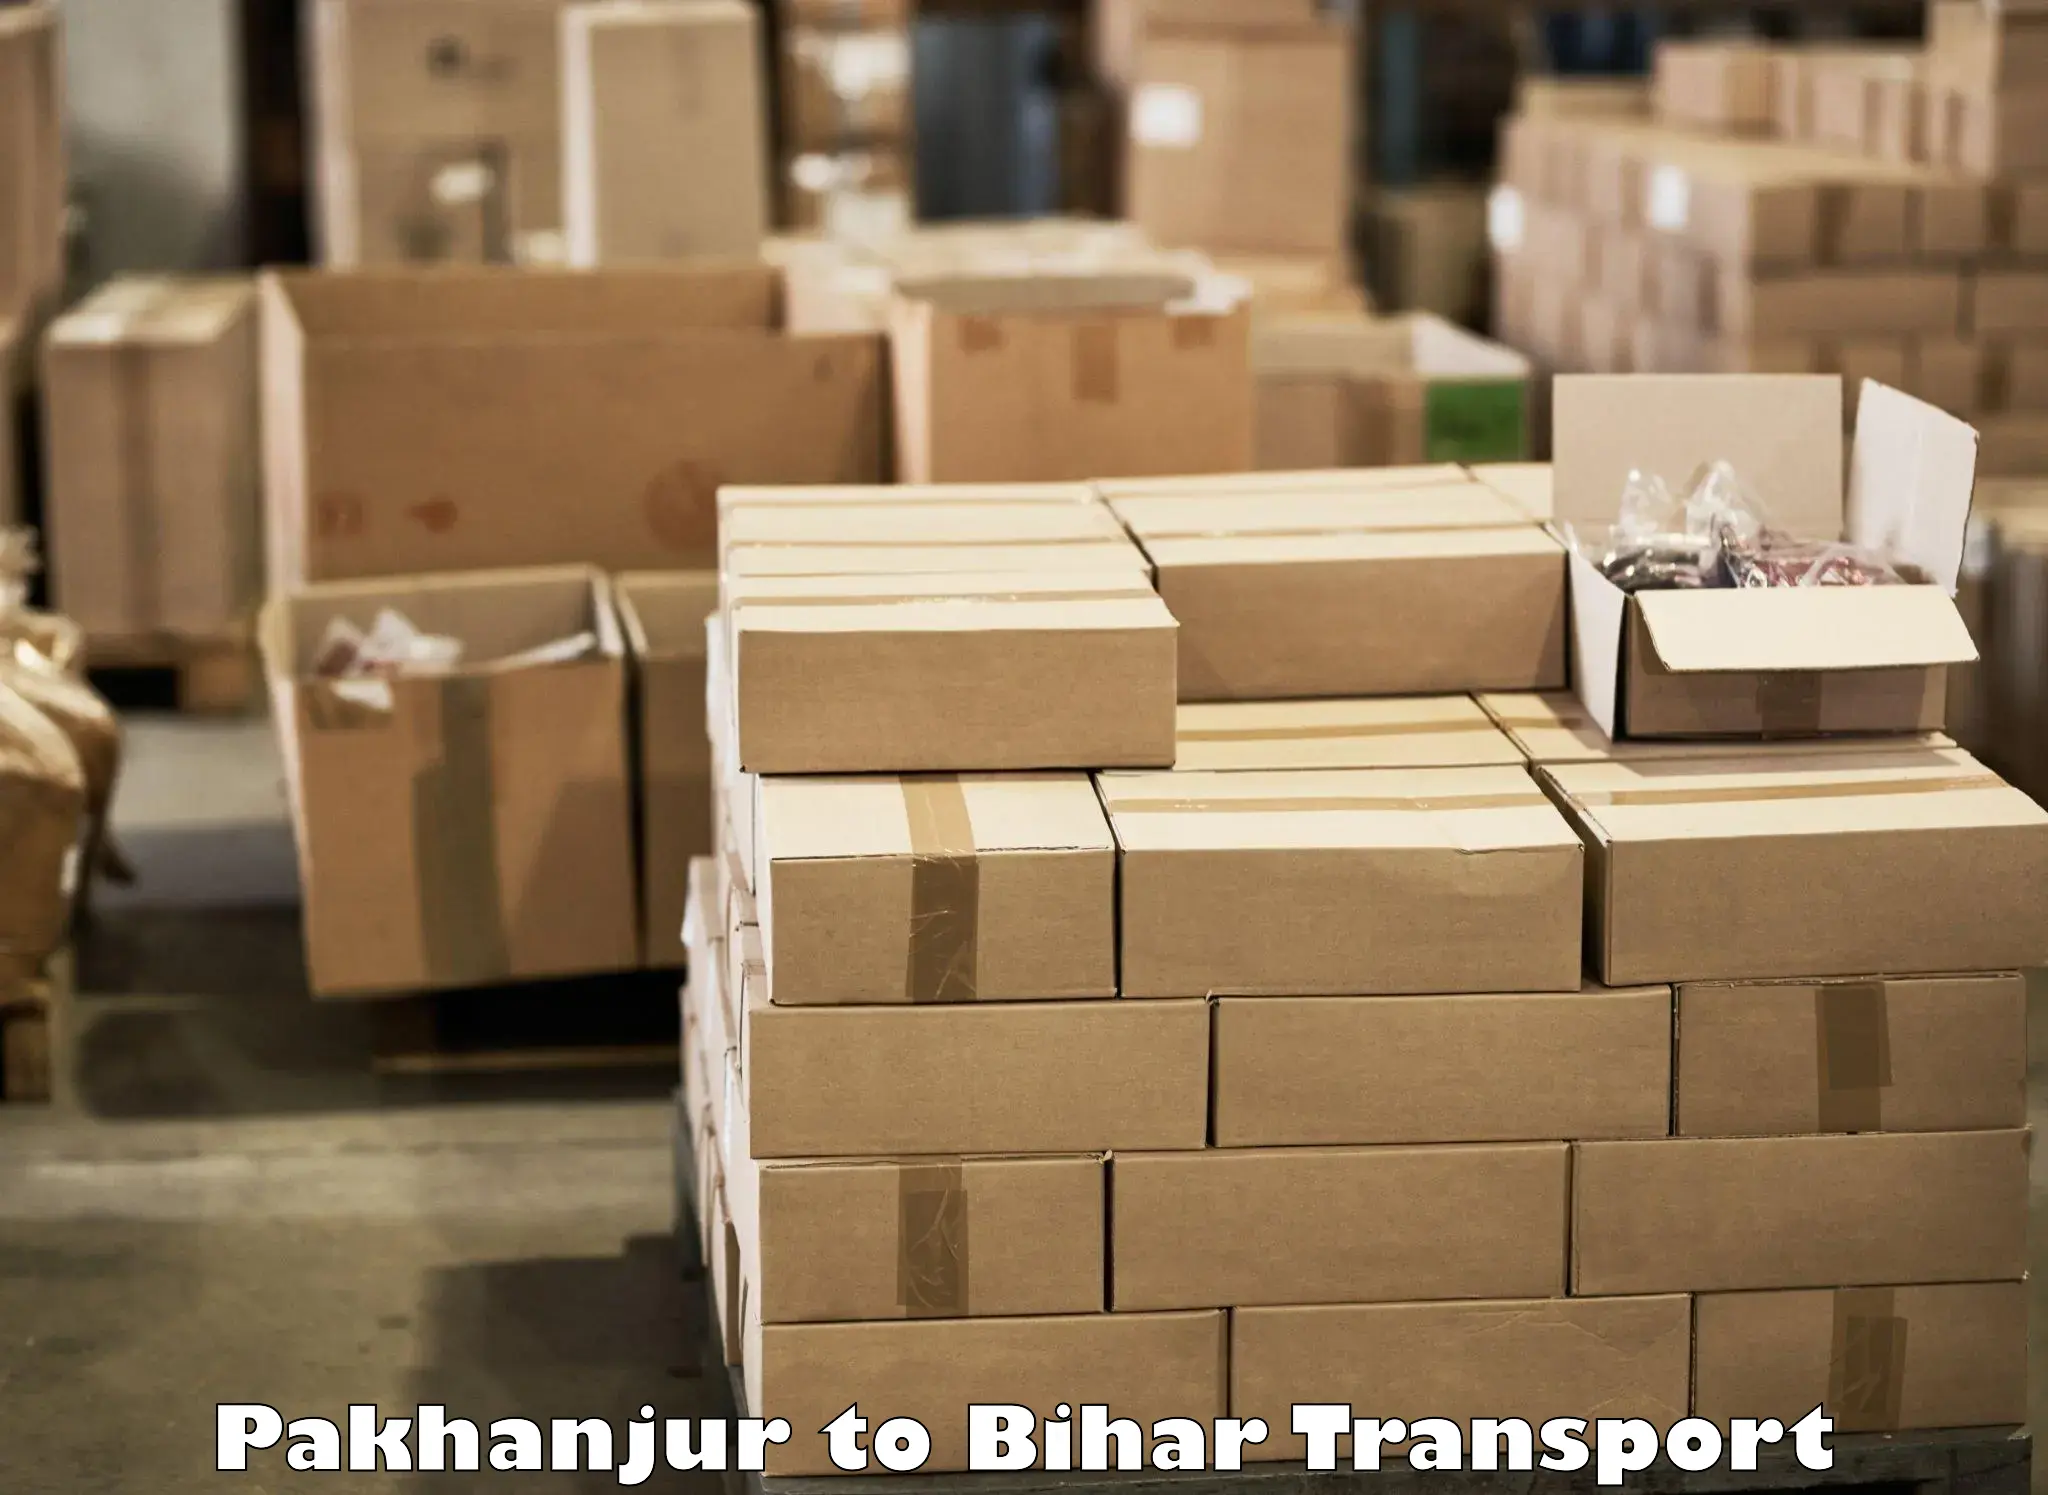 Furniture transport service Pakhanjur to Bihar